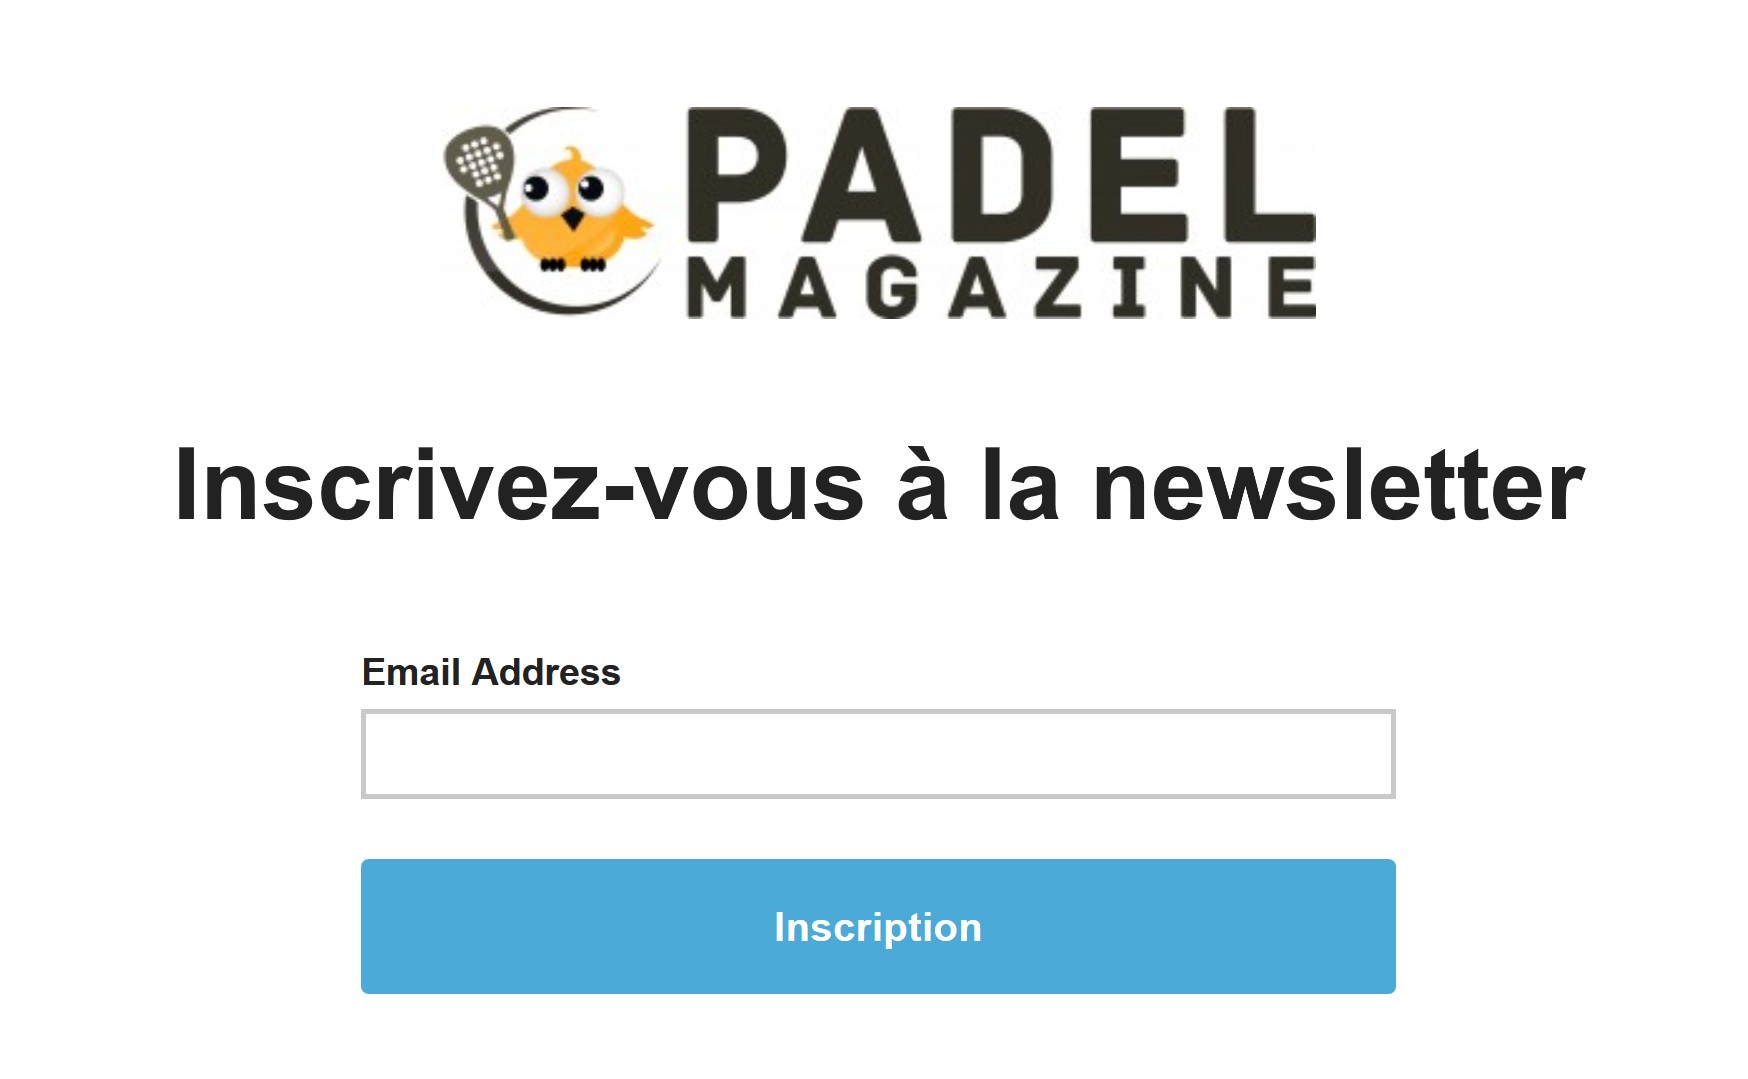 关注时事通讯 Padel Magazine